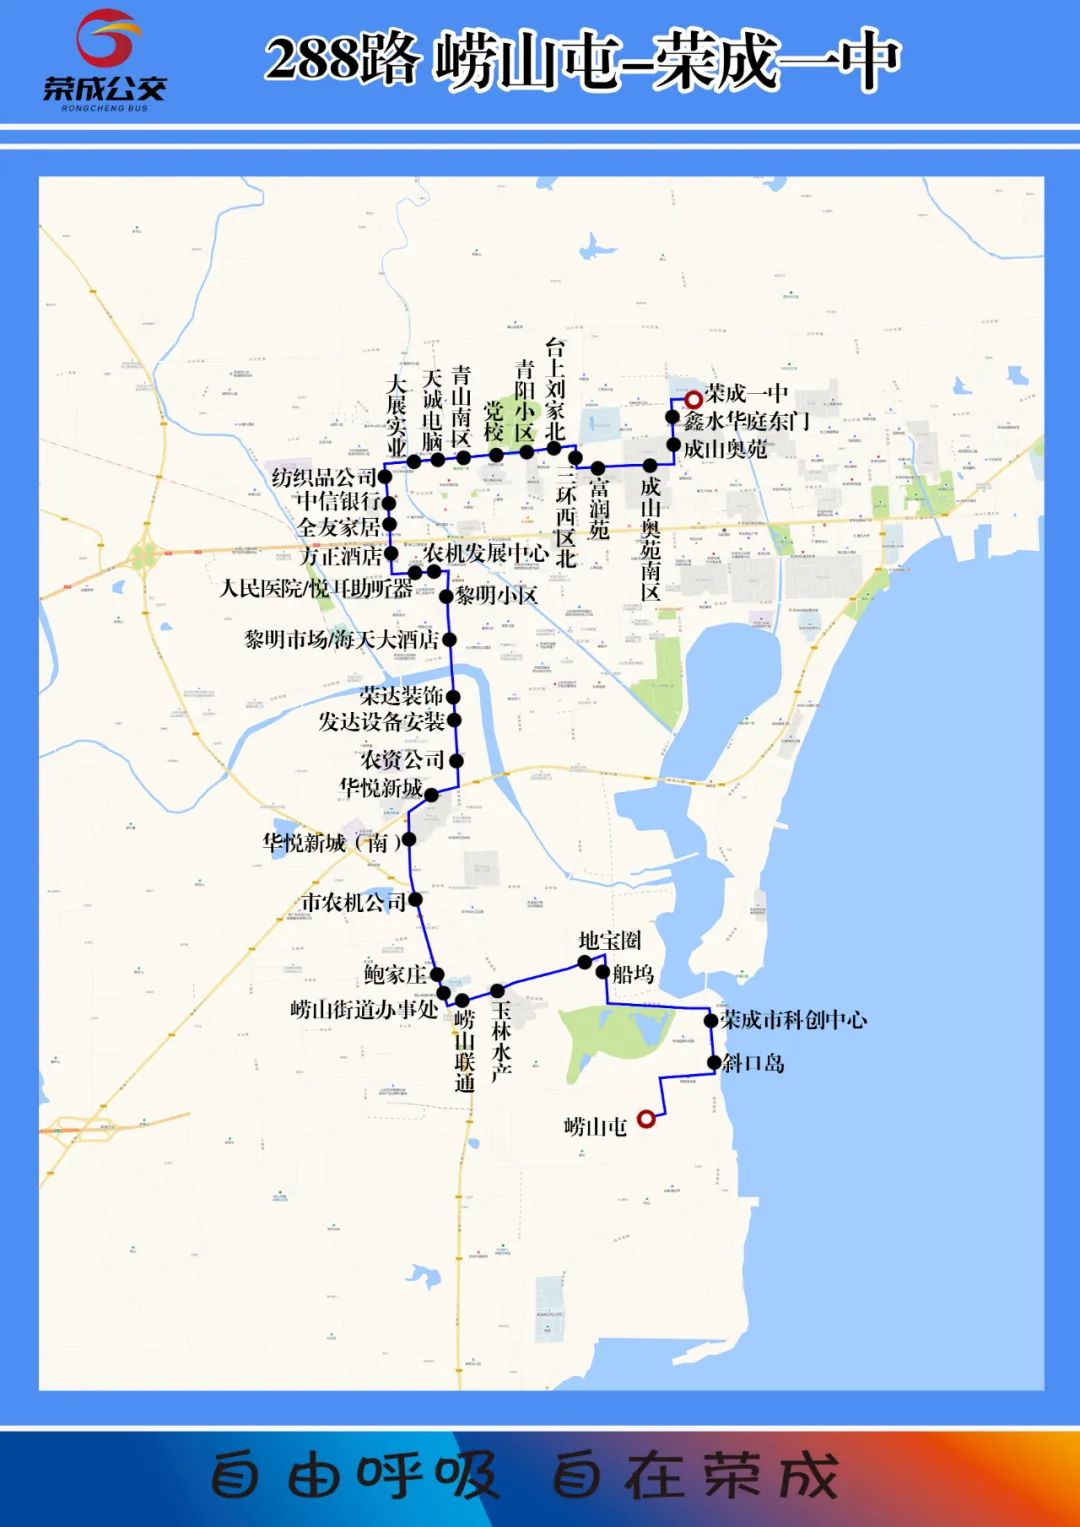 958路公交车路线图全线图片